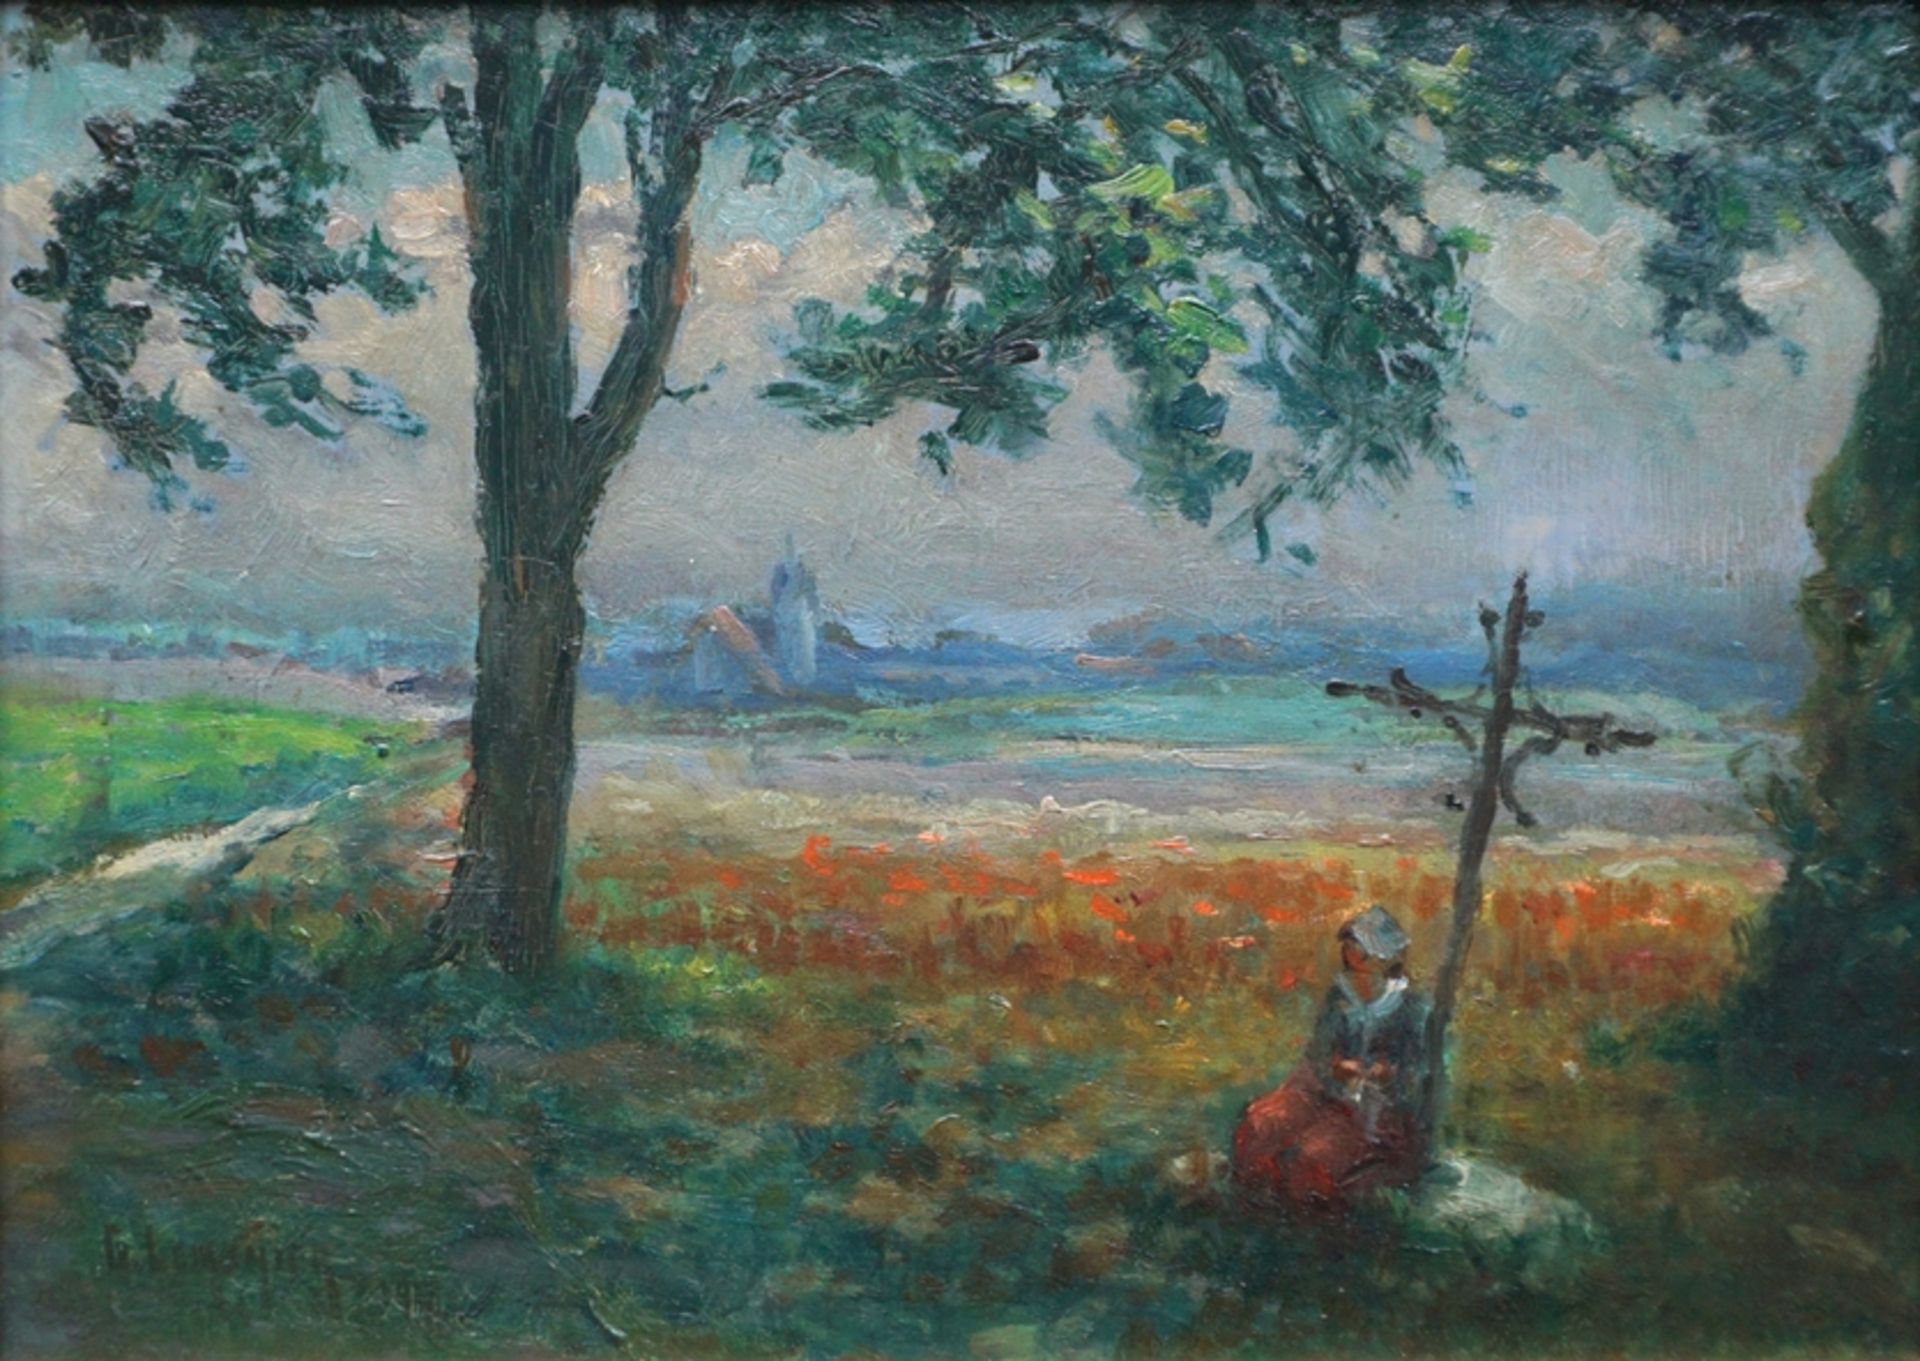 G. Lemonier, "Bei der Rast", 1917, Öl/Holz